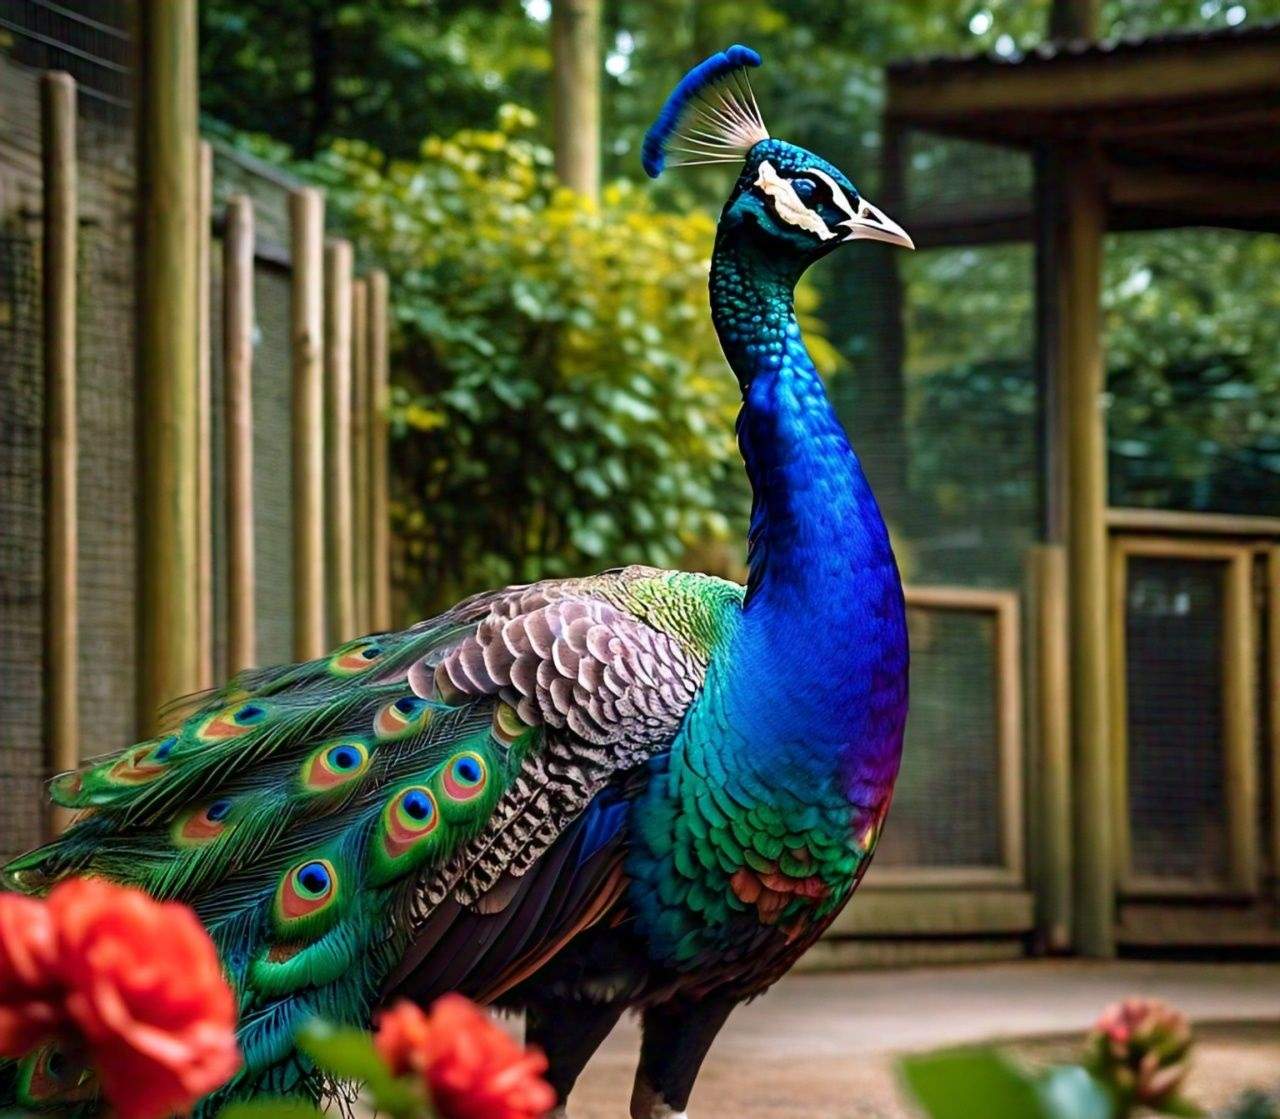 Resplendent Peacock